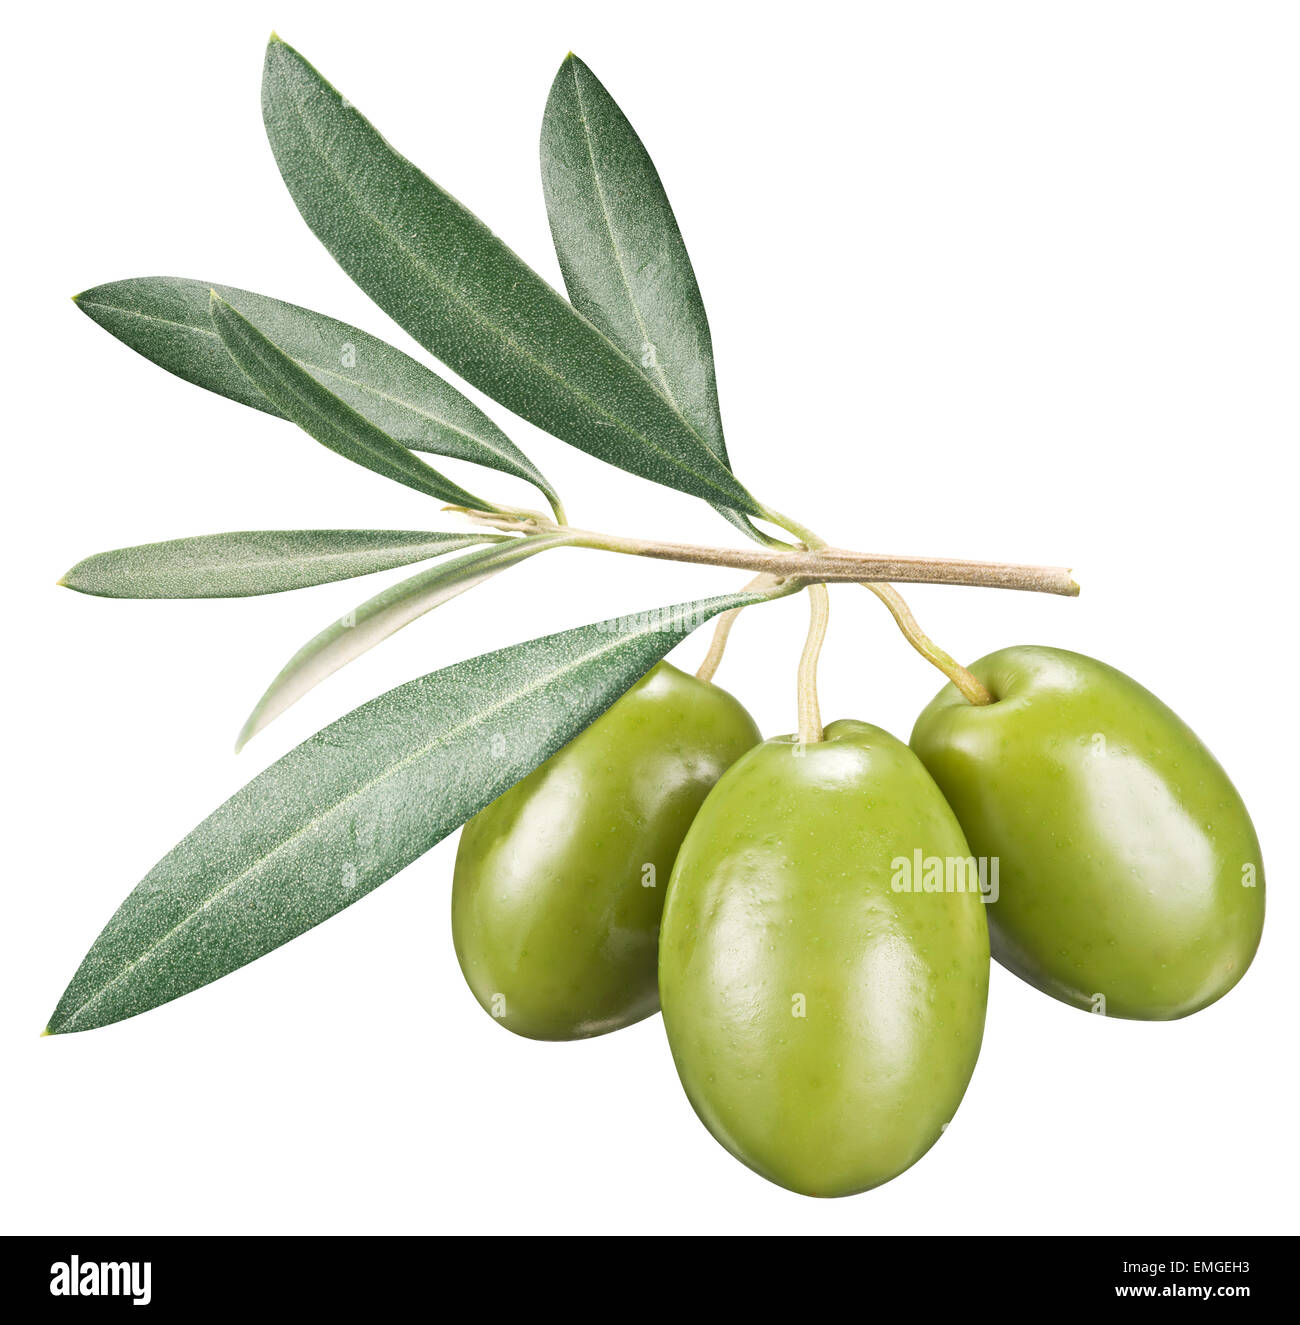 Olives vertes avec des feuilles sur un fond blanc. Fichier contient des chemins de détourage. Banque D'Images